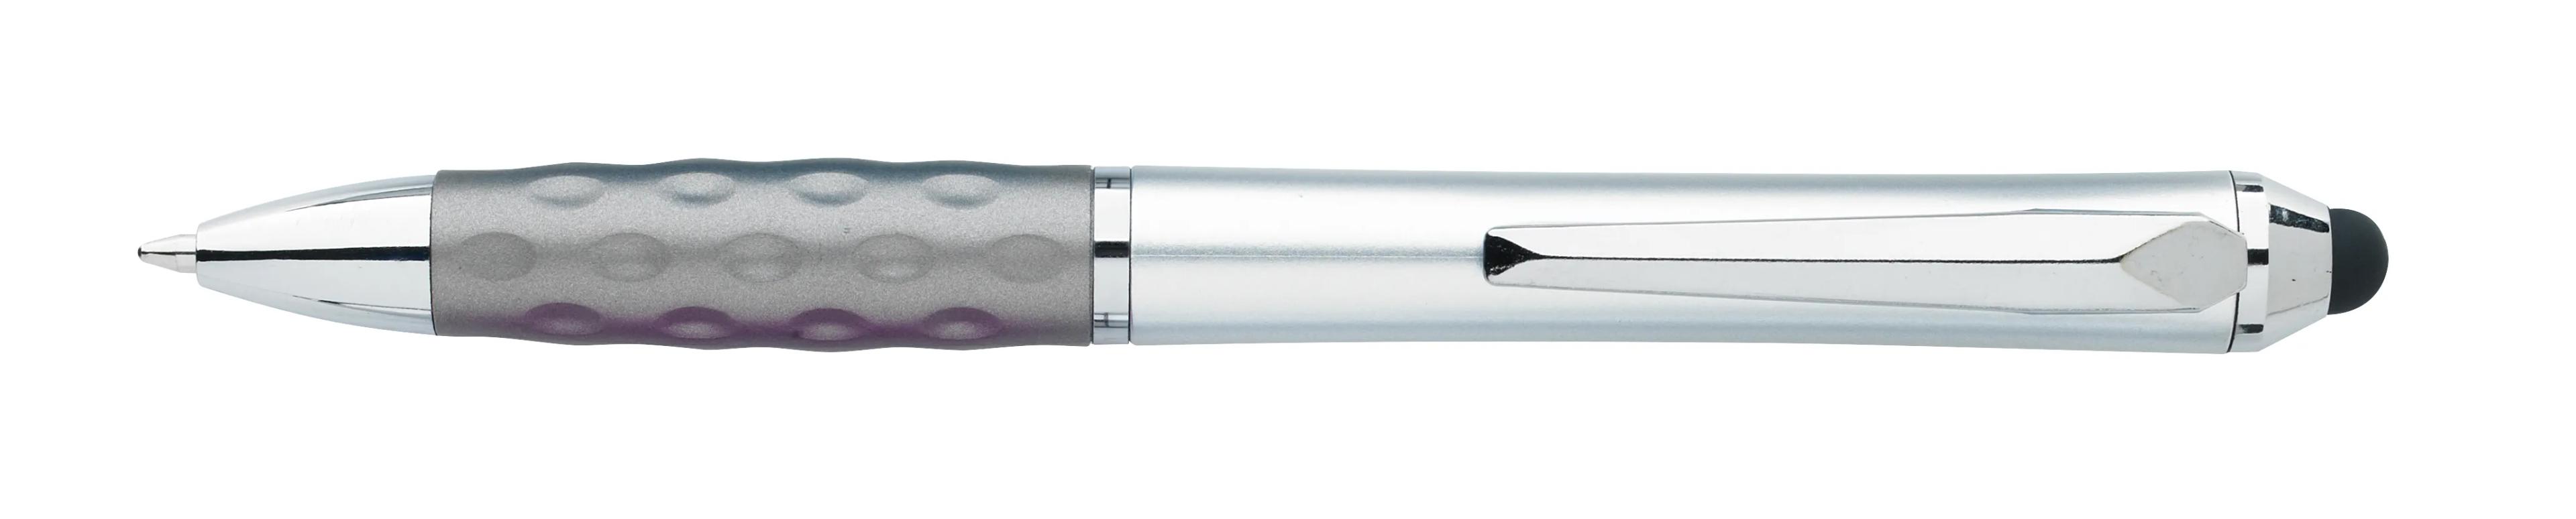 Tev Silver Stylus Pen 6 of 55